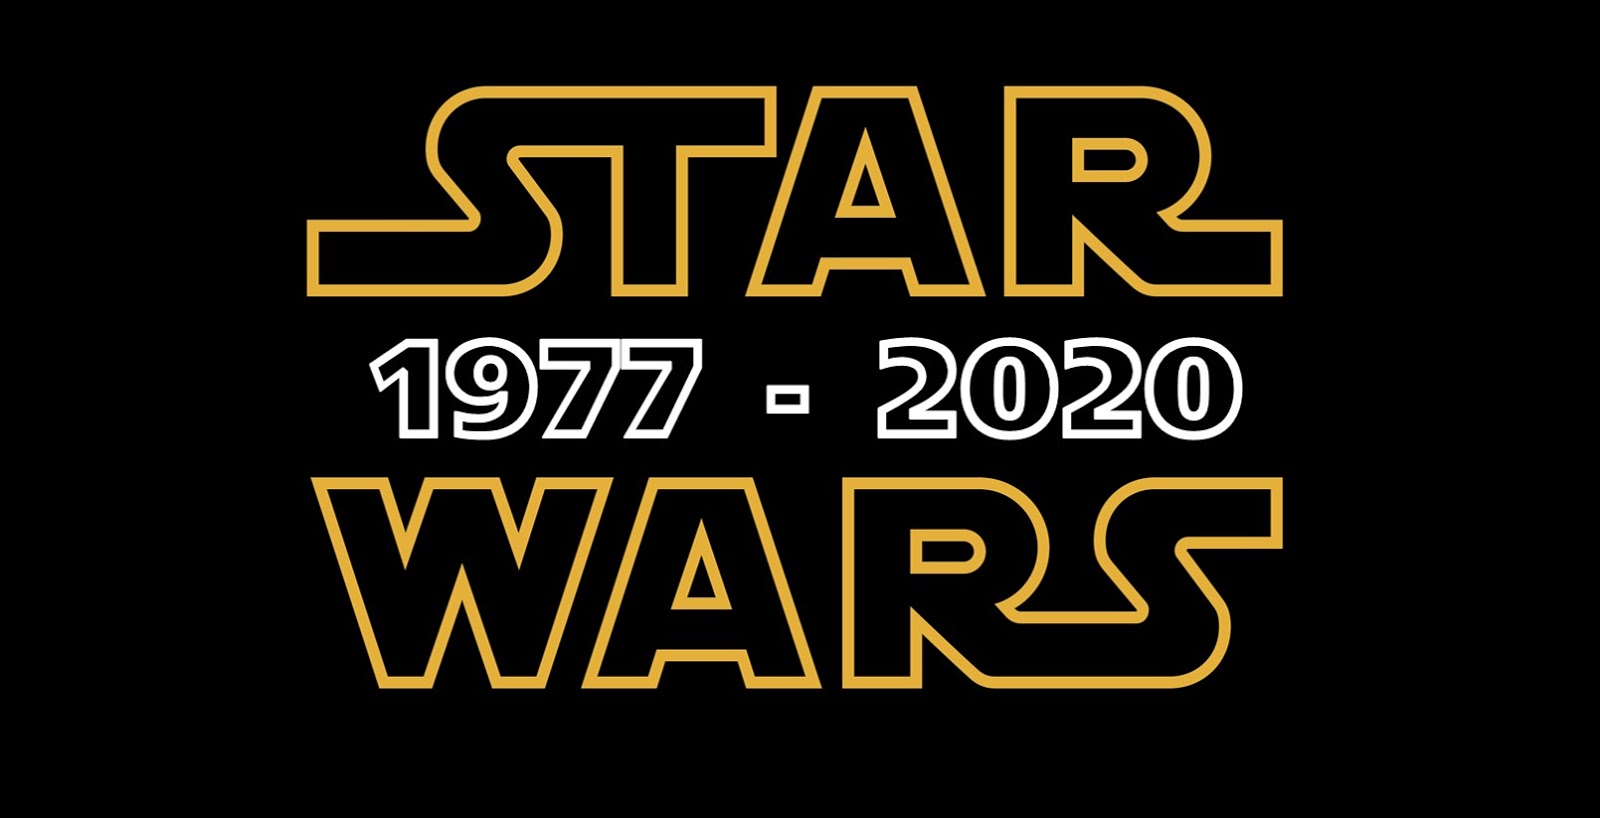 El Orden Cronológico De Star Wars 1977 2020 Star Wars México Star